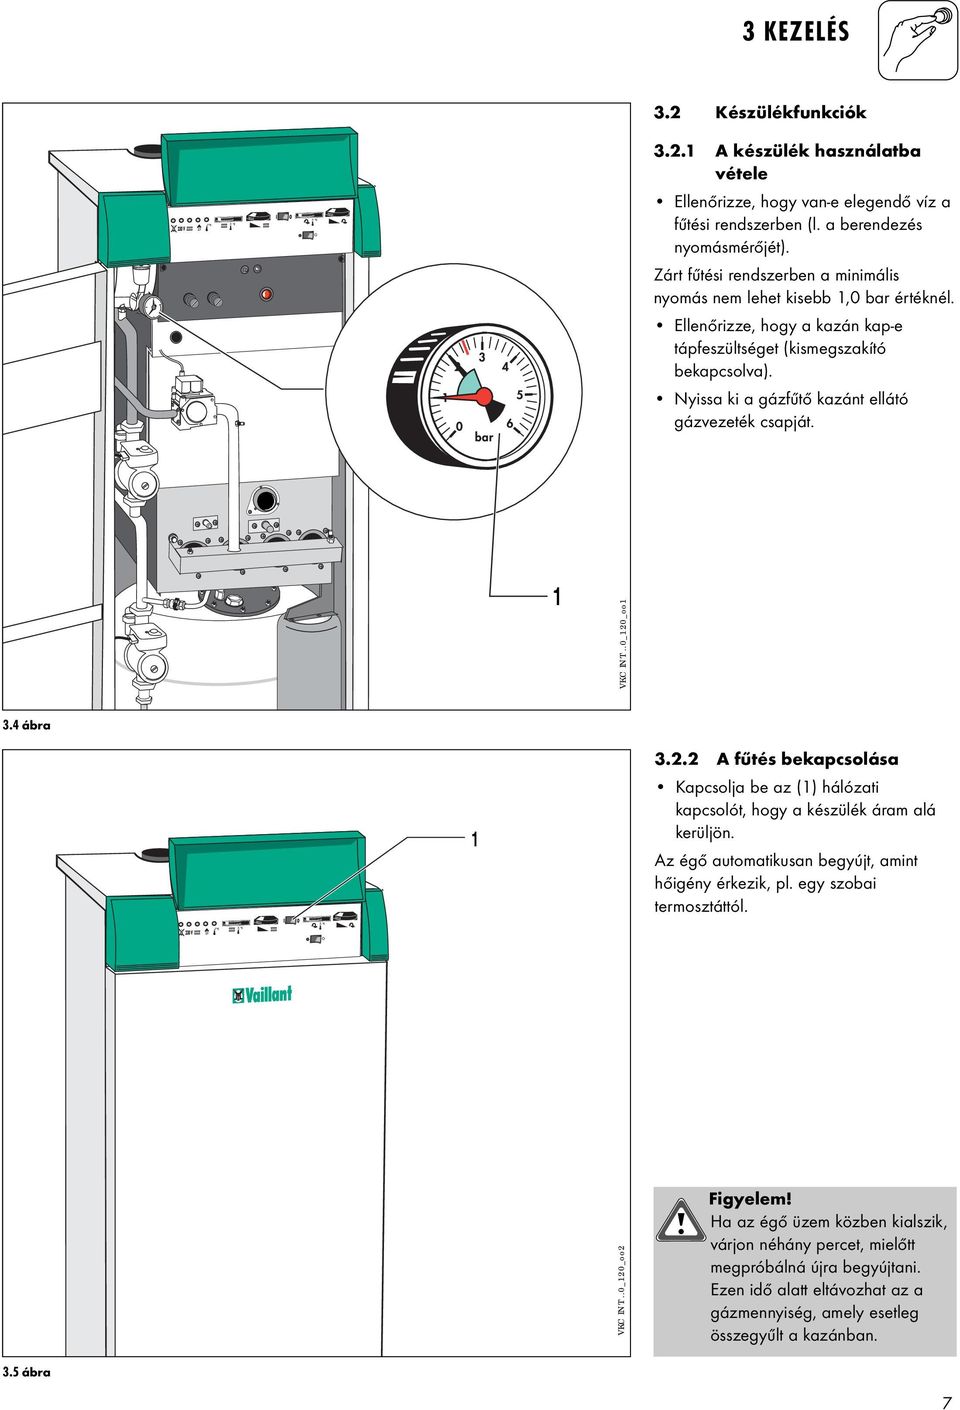 Nyissa ki a gázfűtő kazánt ellátó gázvezeték csapját. VKC INT..0_0_oo 3.4 ábra 3.. A fűtés bekapcsolása Kapcsolja be az () hálózati kapcsolót, hogy a készülék áram alá kerüljön.